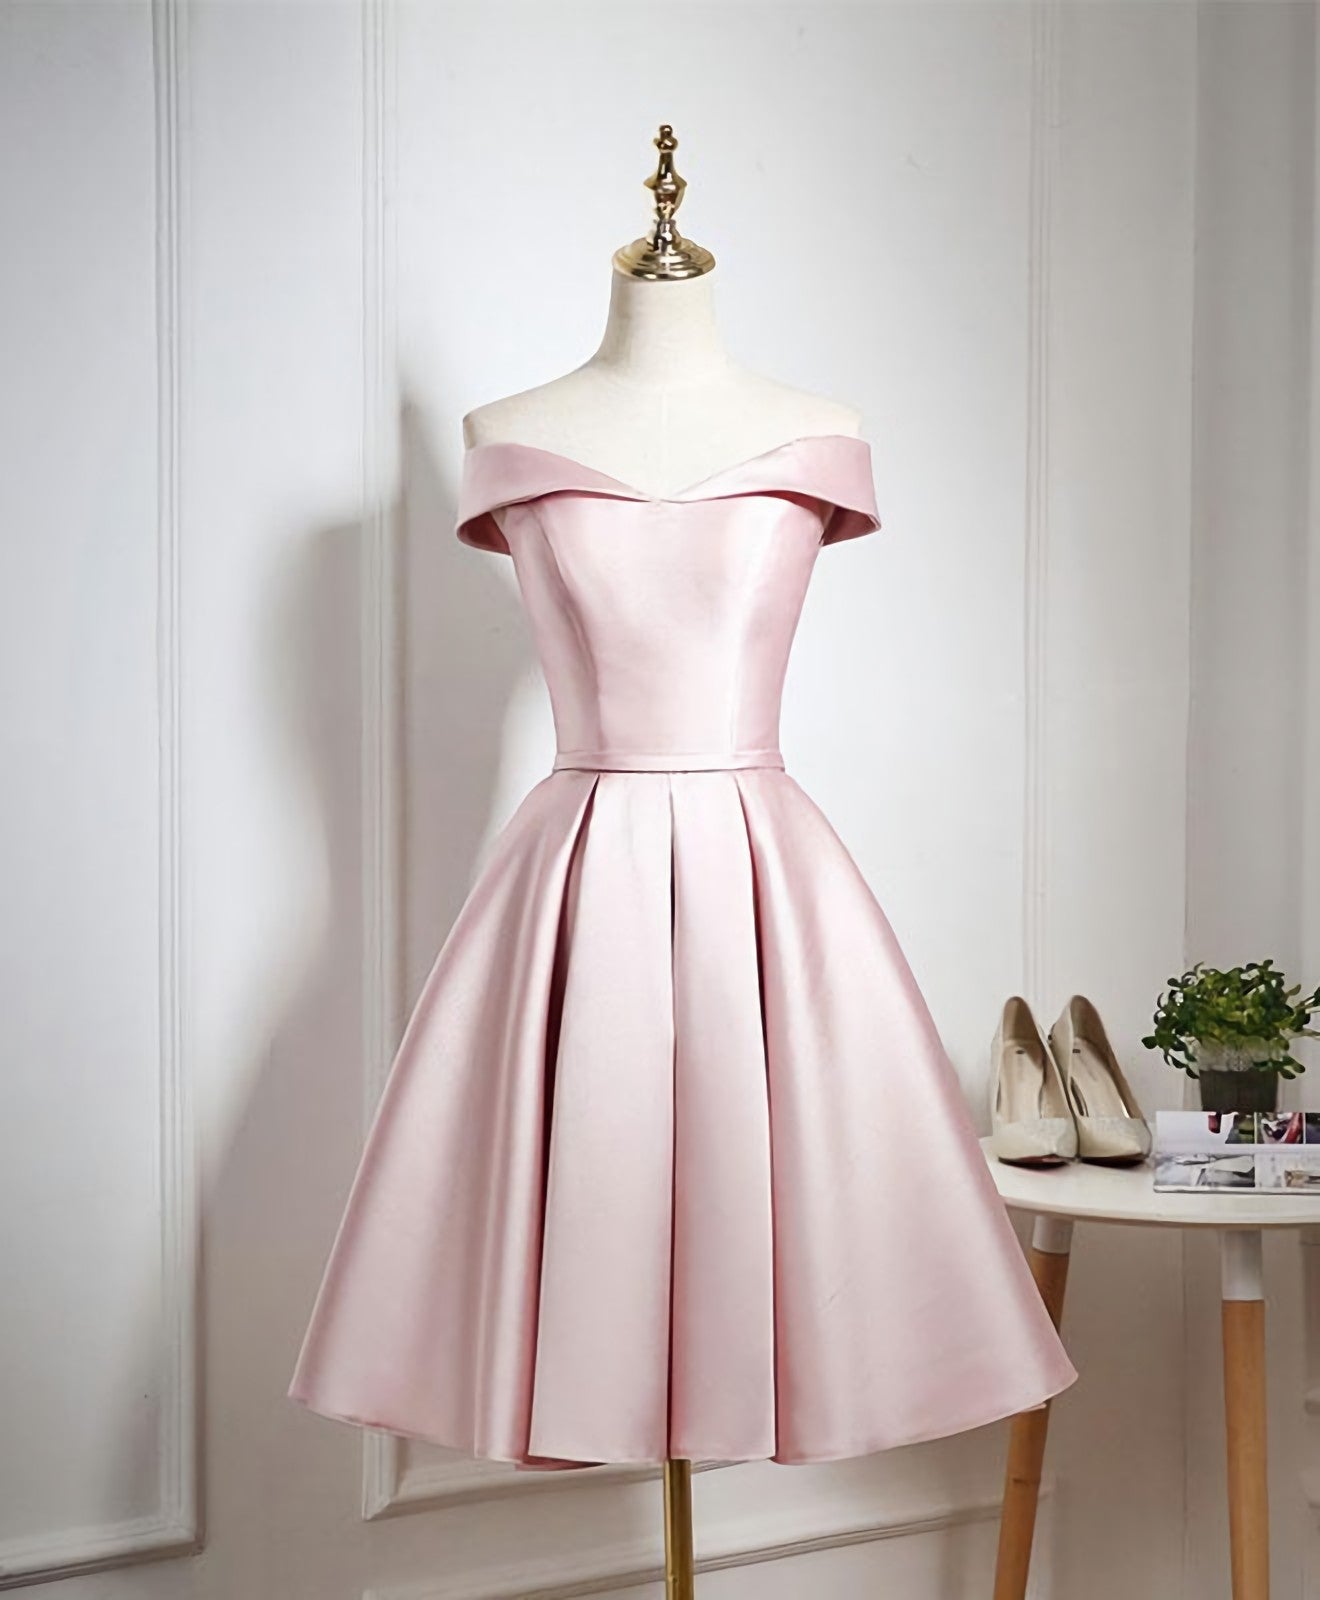 Vacation Dress, Cute Pink A Line Short Prom Dress, Pink Evening Dress